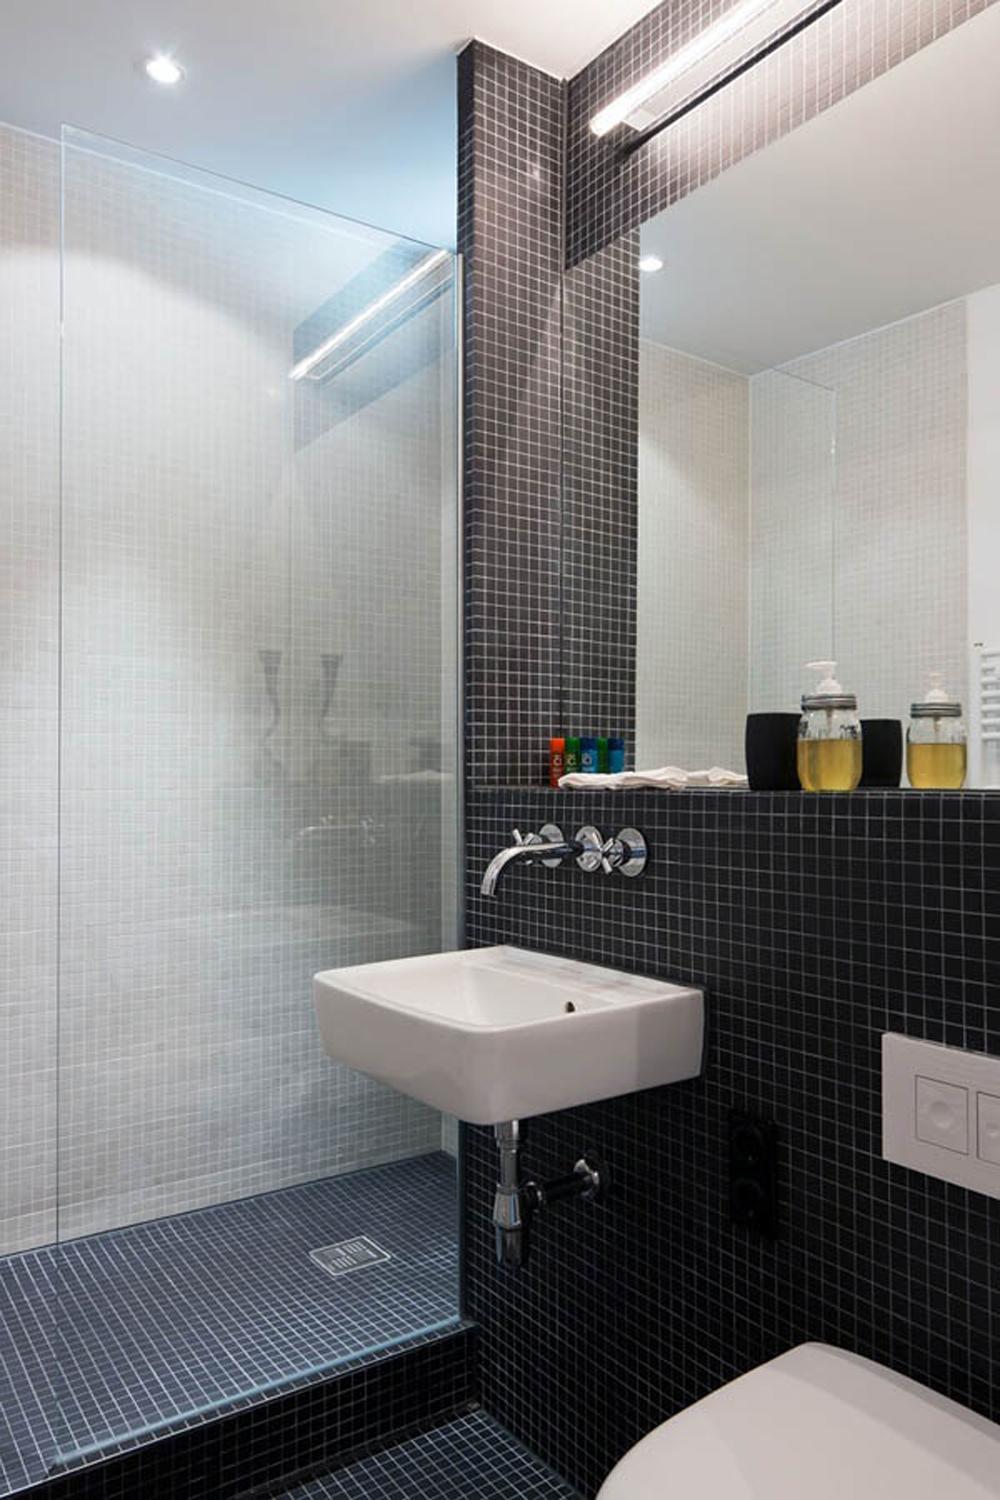 Bad Nachher #bad #badezimmer #dusche #waschbecken ©PlusOne/ spamroom/ Ringo Paulusch